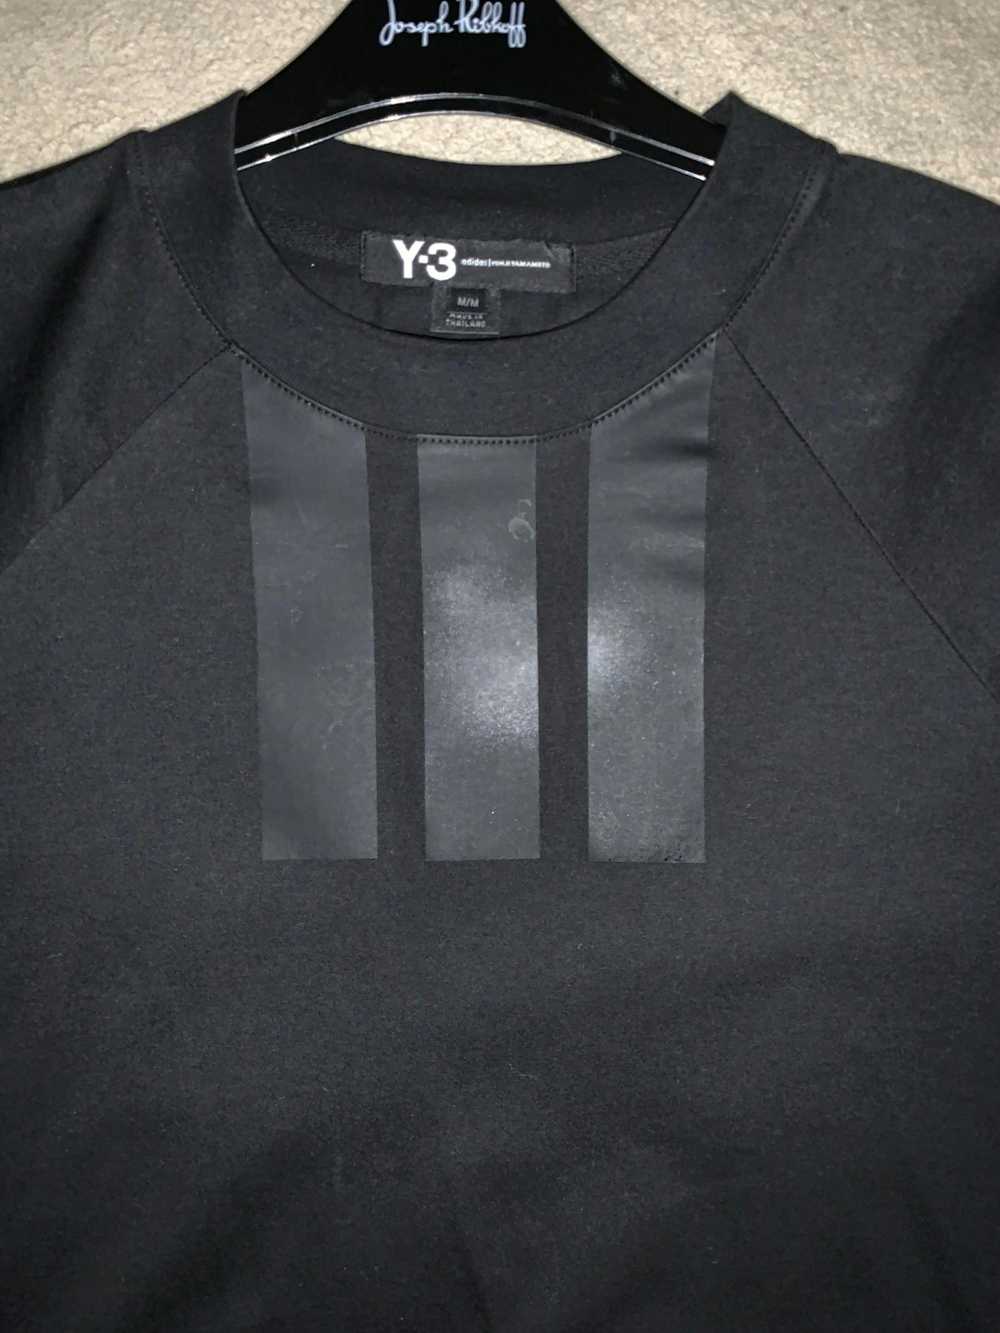 Y-3 Y-3 t shirt - image 1